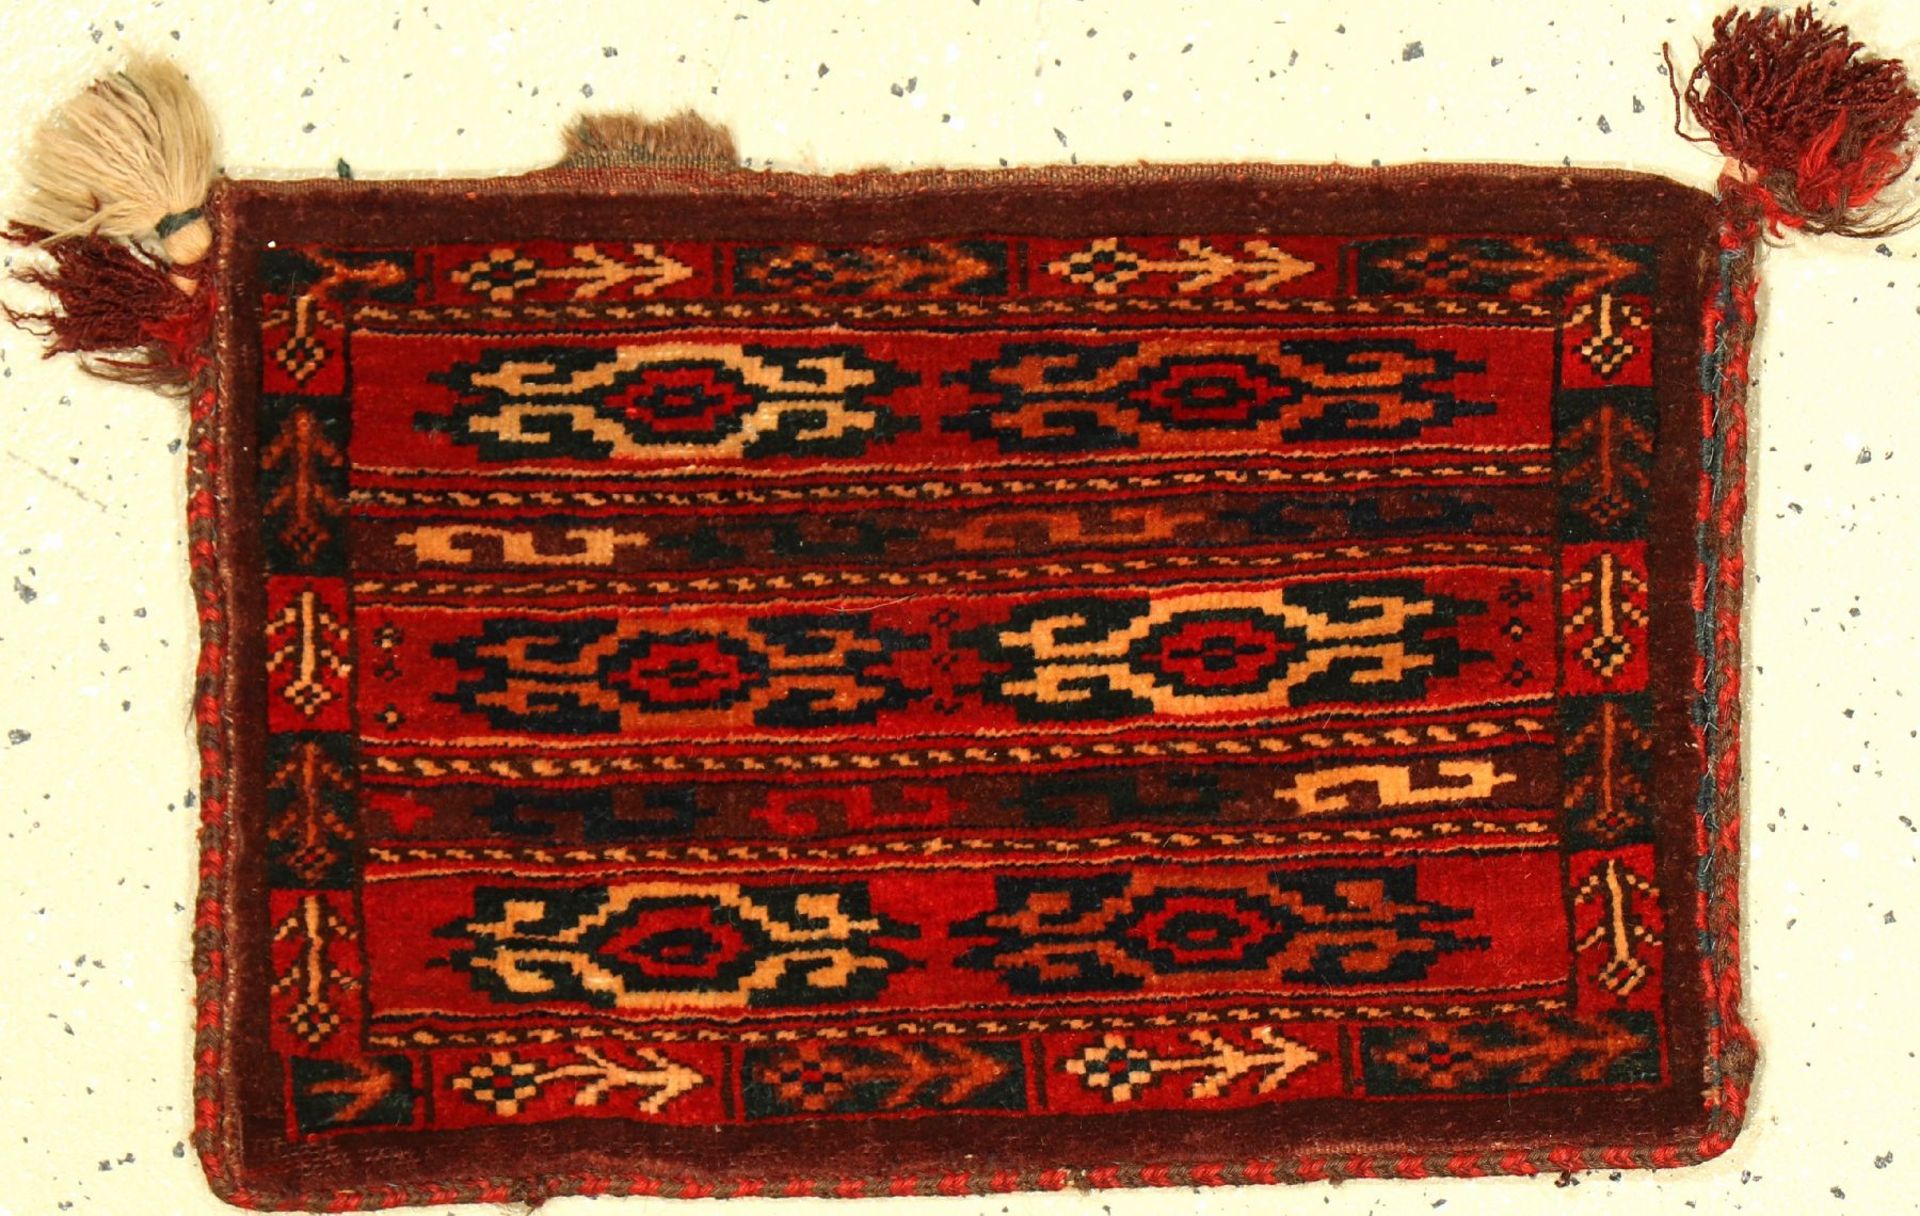 Yomud Spindeltasche alt, Turkmenistan, um 1920, Wolle auf Wolle, ca. 48 x 32 cm, EHZ: 2Yomut Bag,